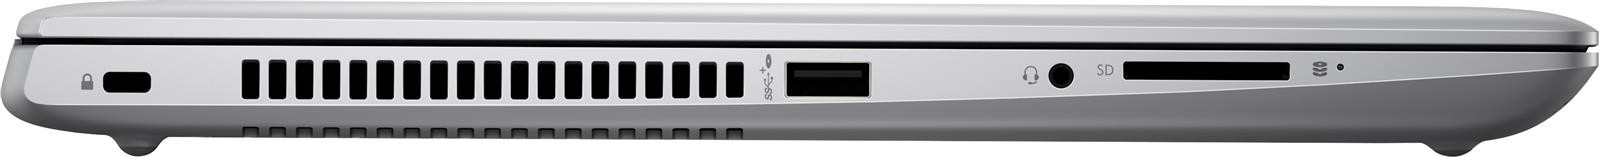 HP ProBook 440 G5 Core i7-8550U 1.80GHz 8GB RAM 1TB HDD FHD IPS Win 10 Pro